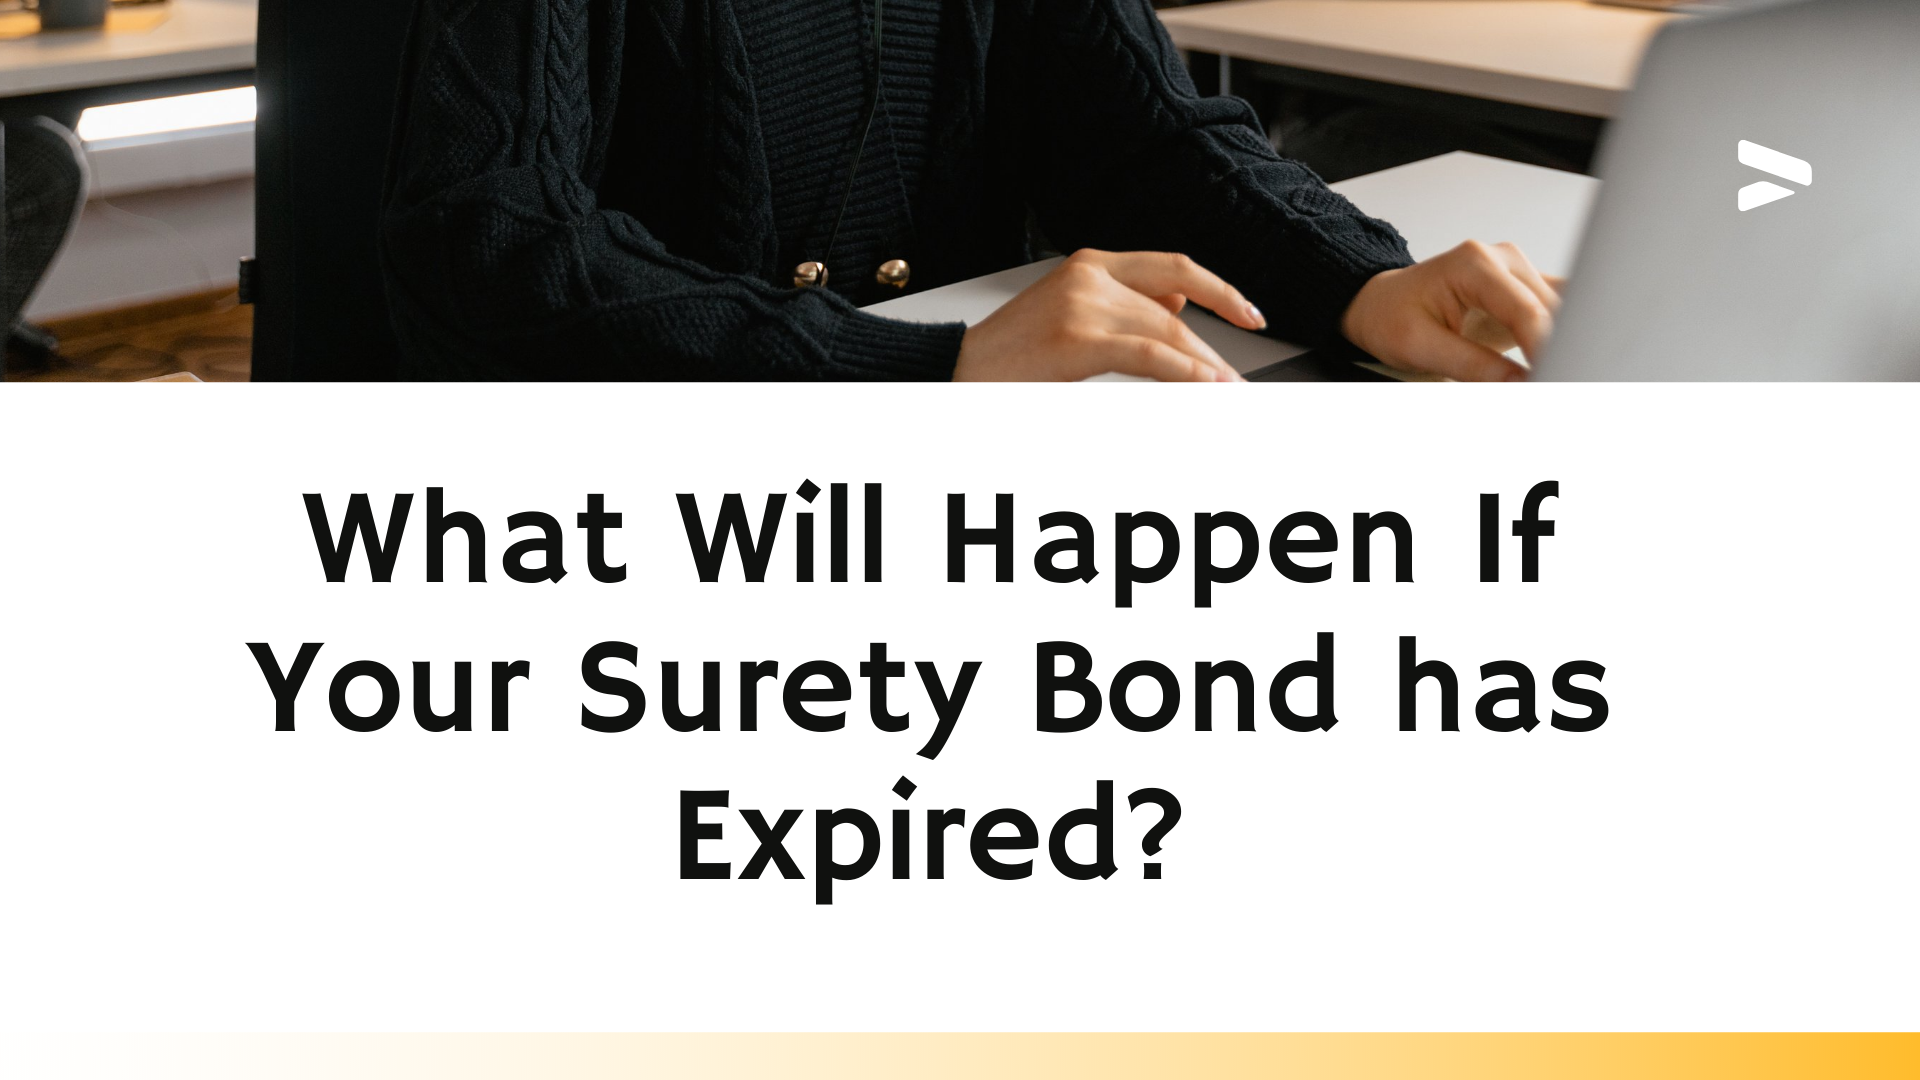 surety bond - When should my surety bond be renewed